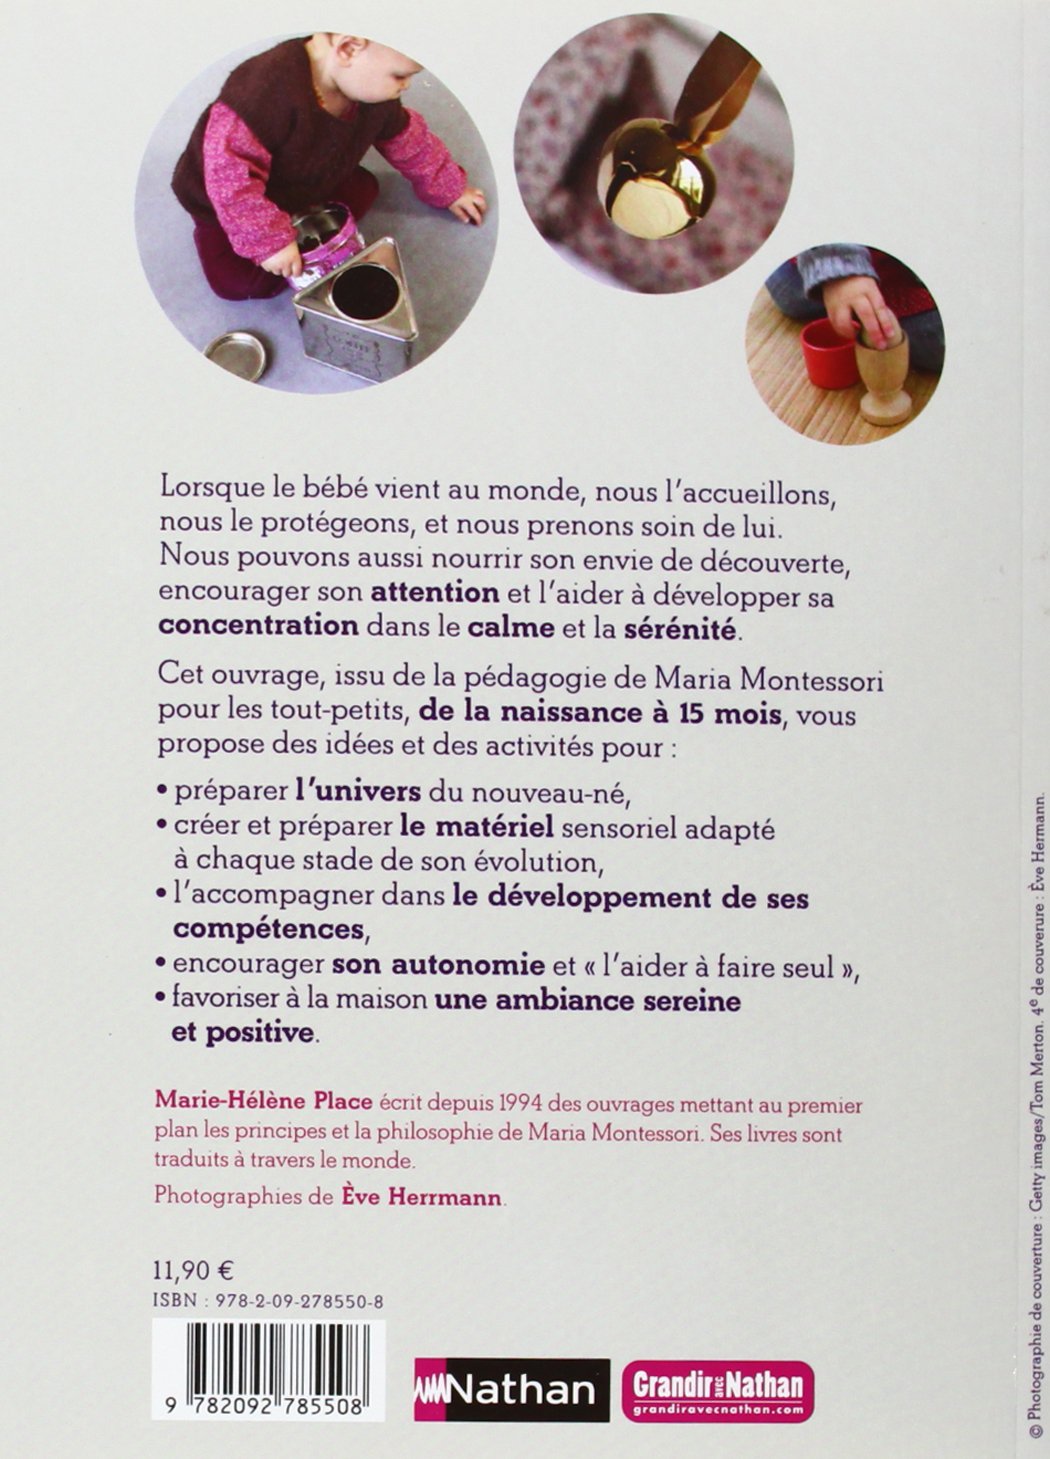 60 activités Montessori pour mon bébé (Marie-Hélène Place)